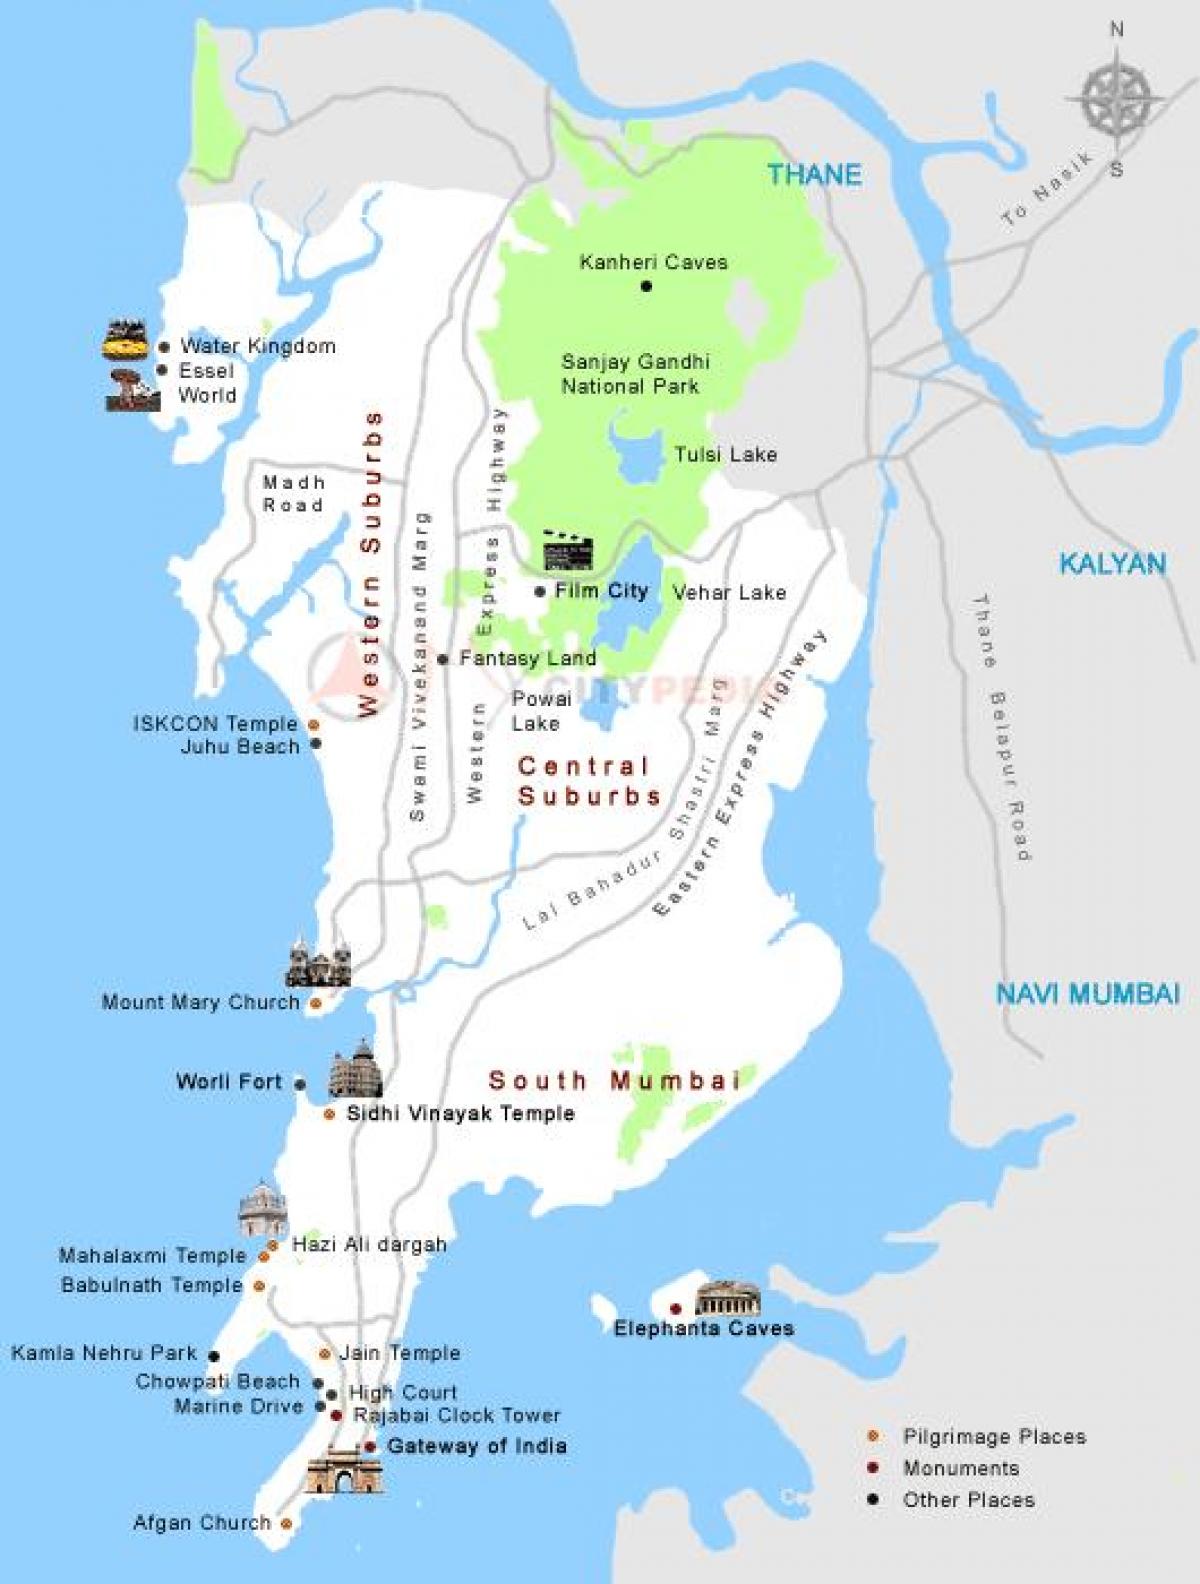 Mumbai darshan places map